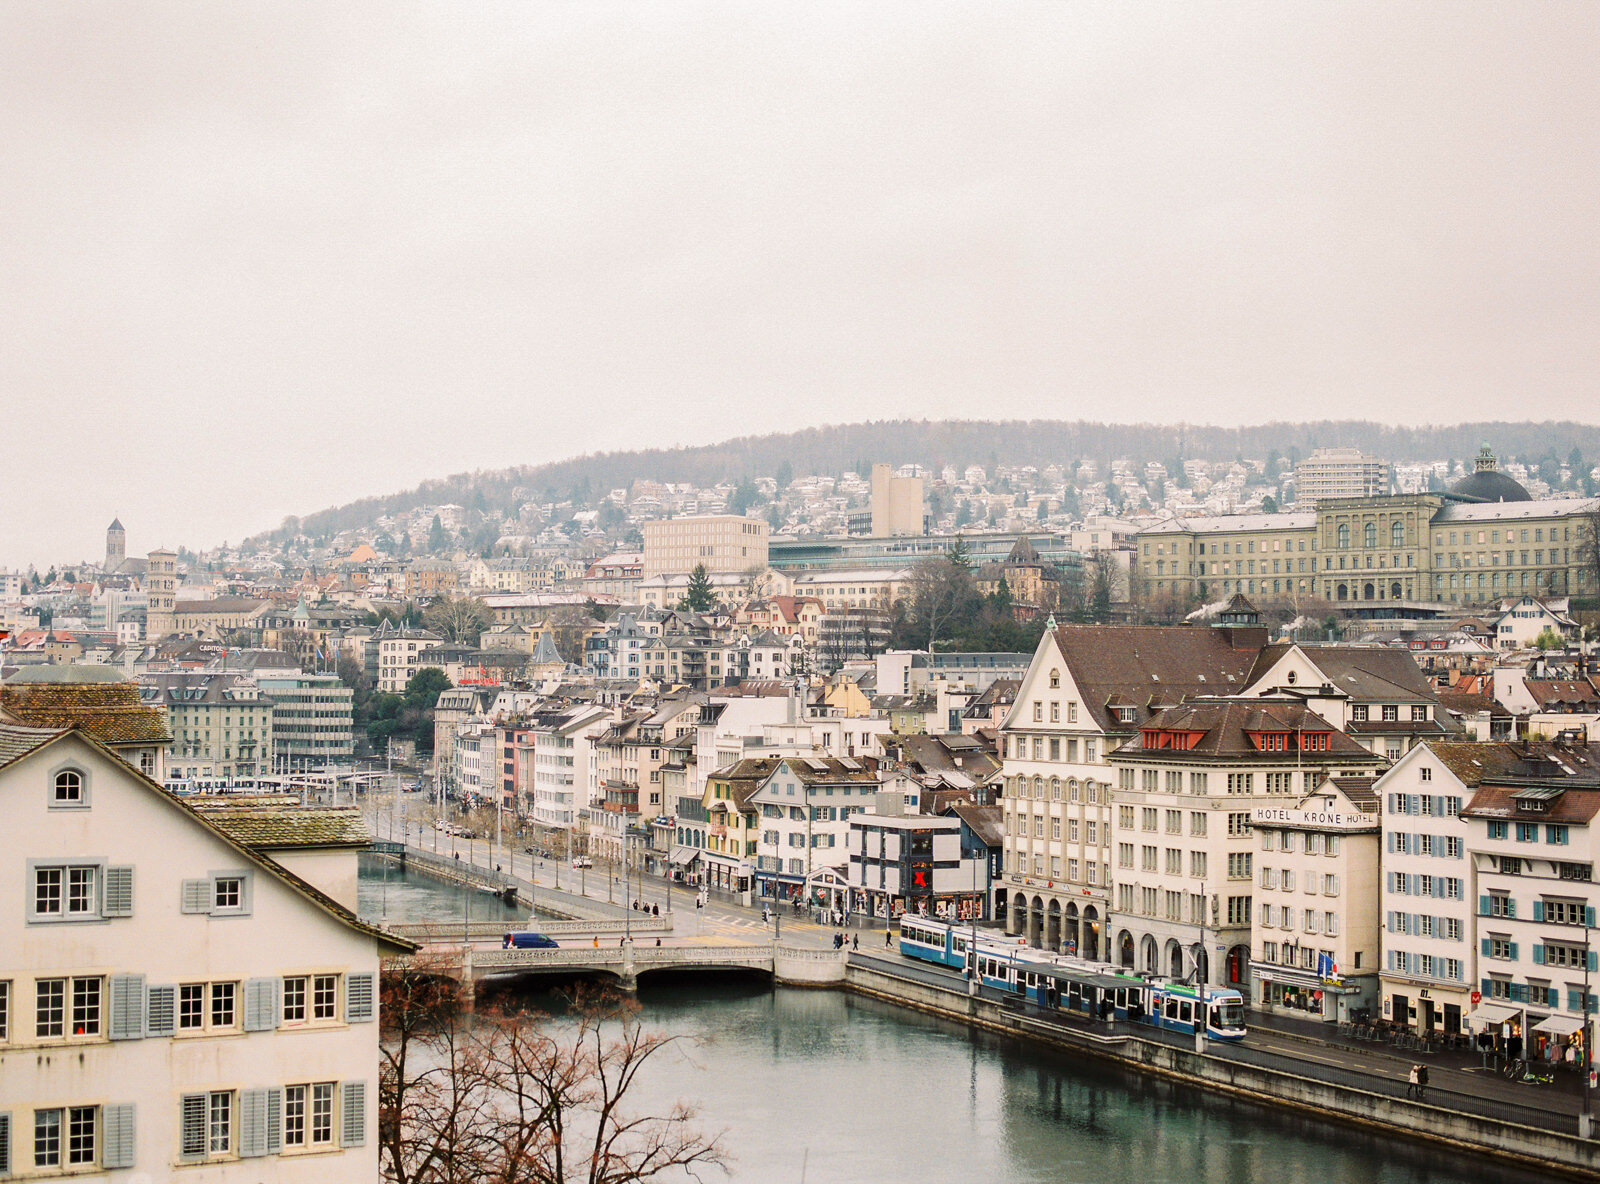 Zurich old town, shot on medium format film